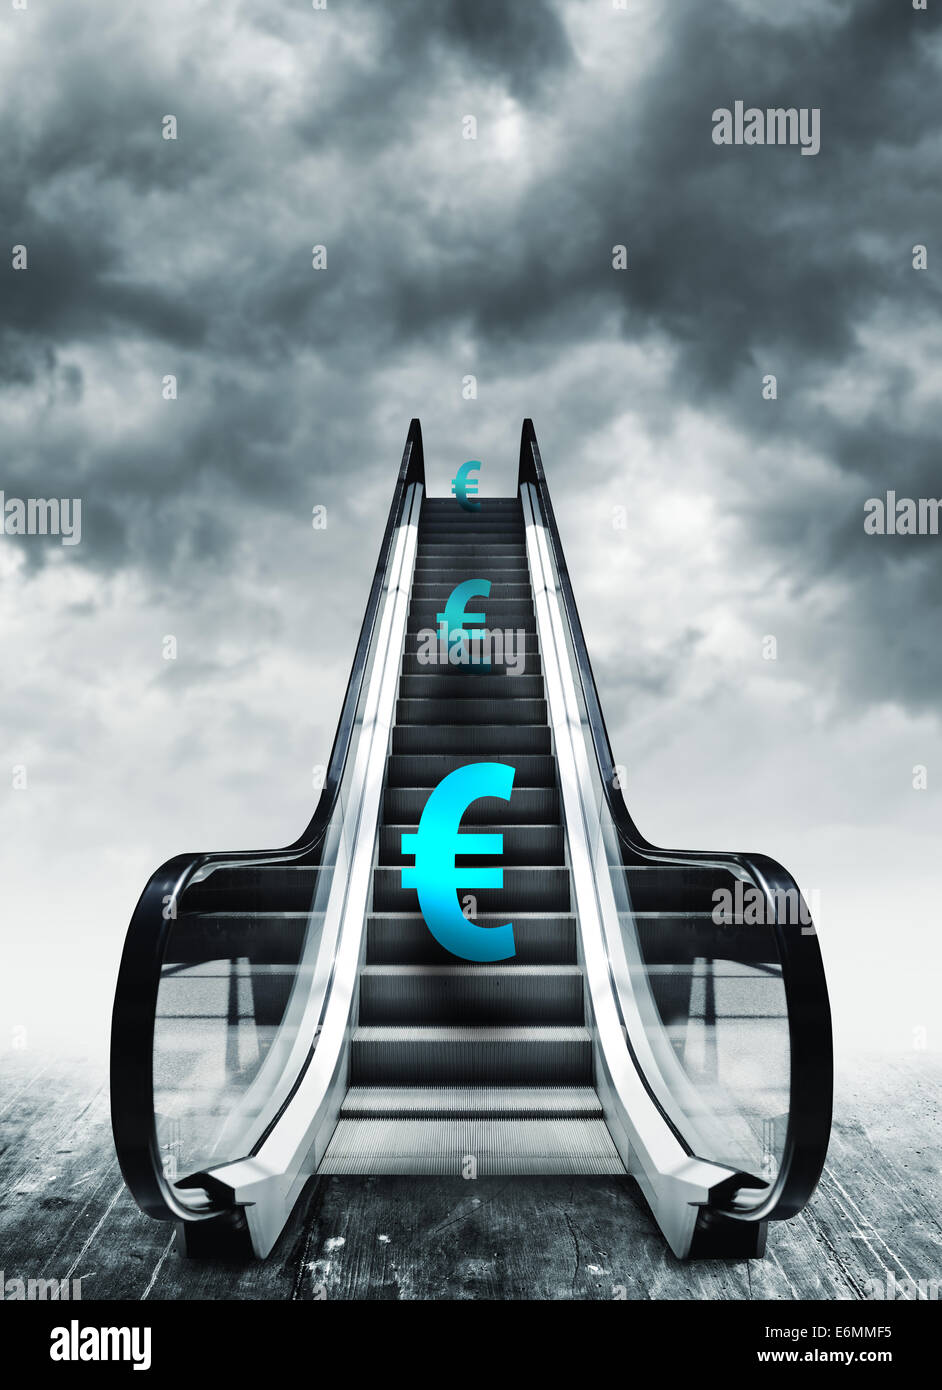 Simbolo dell'euro sulle scale mobili. Concetto di valuta, l'inflazione e deflazione, delle finanze e del tasso di cambio. Foto Stock